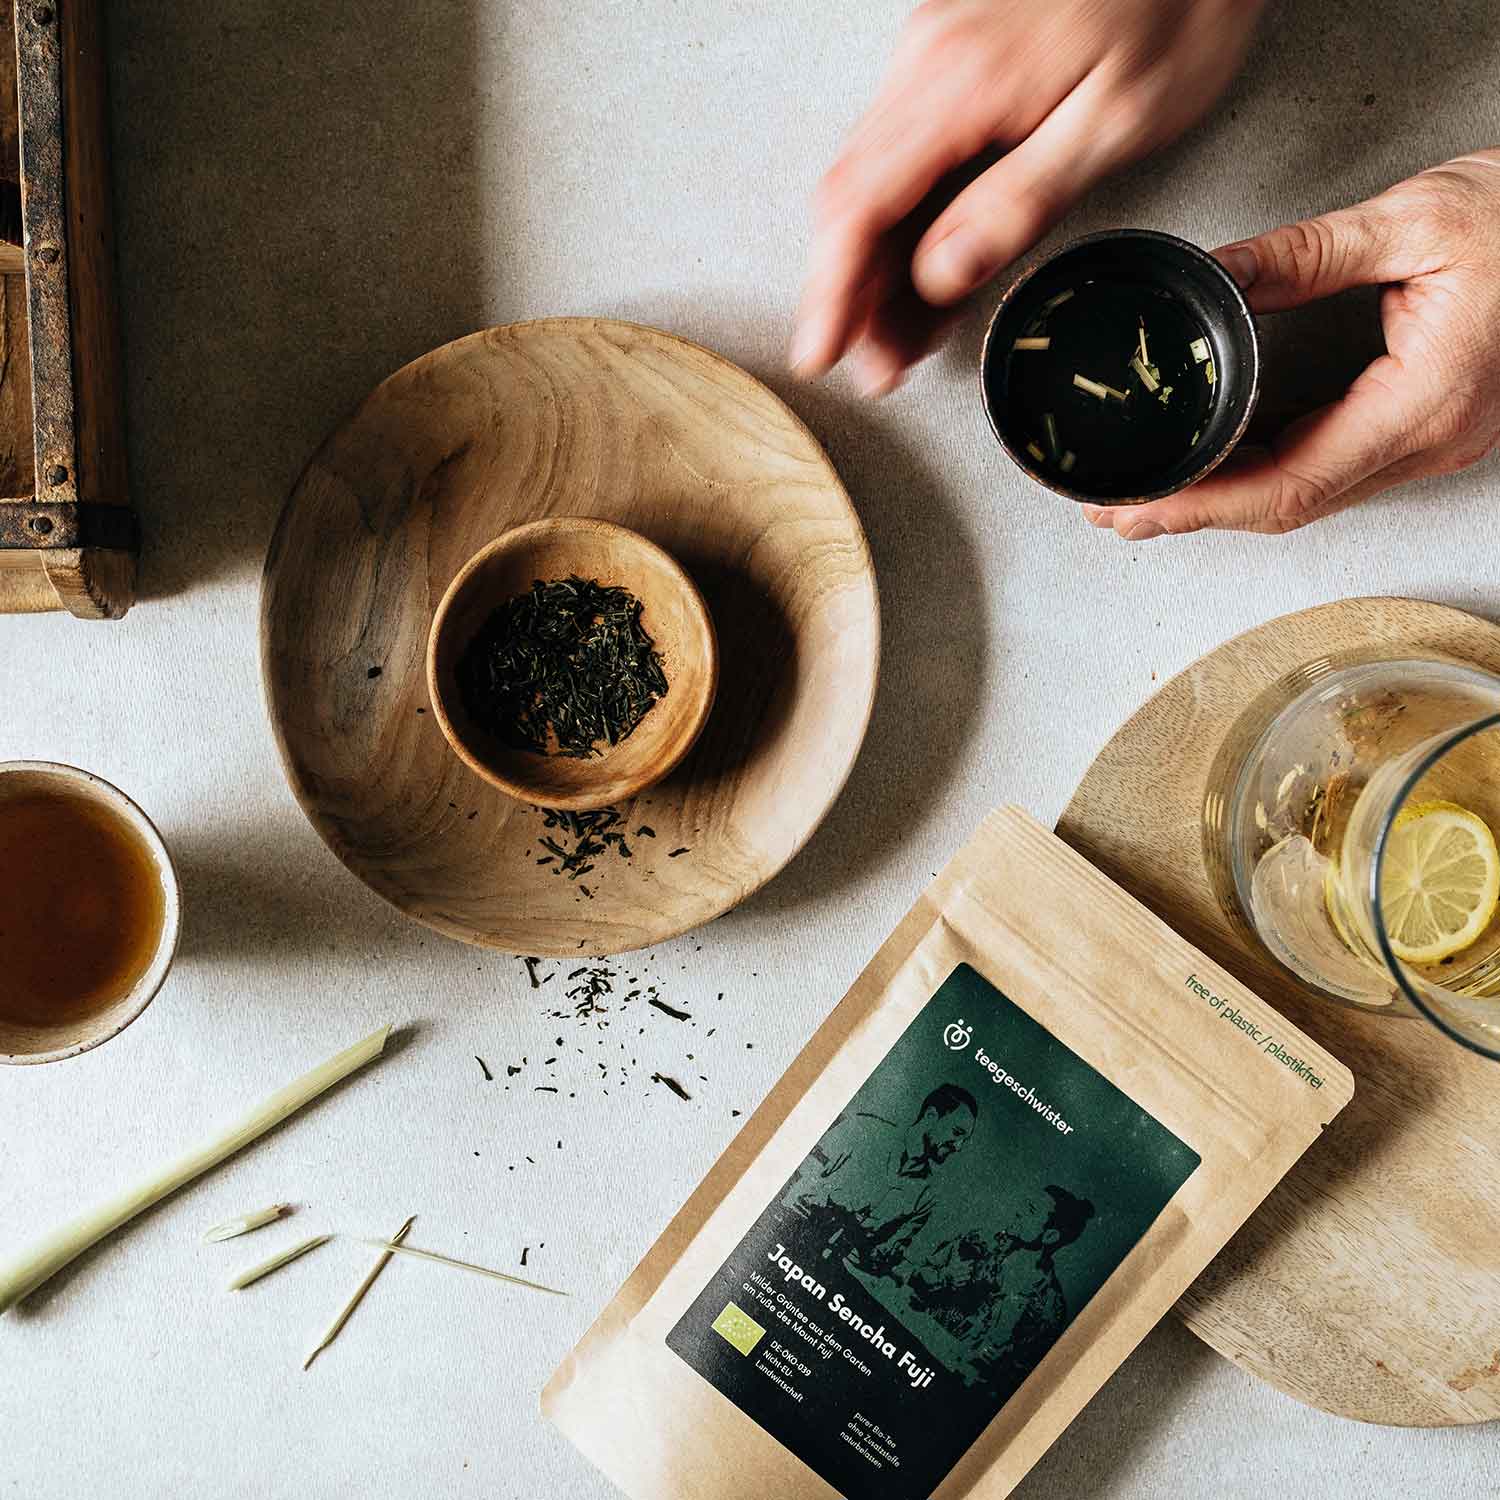 In diesem Bild sieht man die Tee Verpackung des Japan Sencha und den losen Tee in einer Schale. Eine Hand hält einen aufgegossenen Sencha Tee.